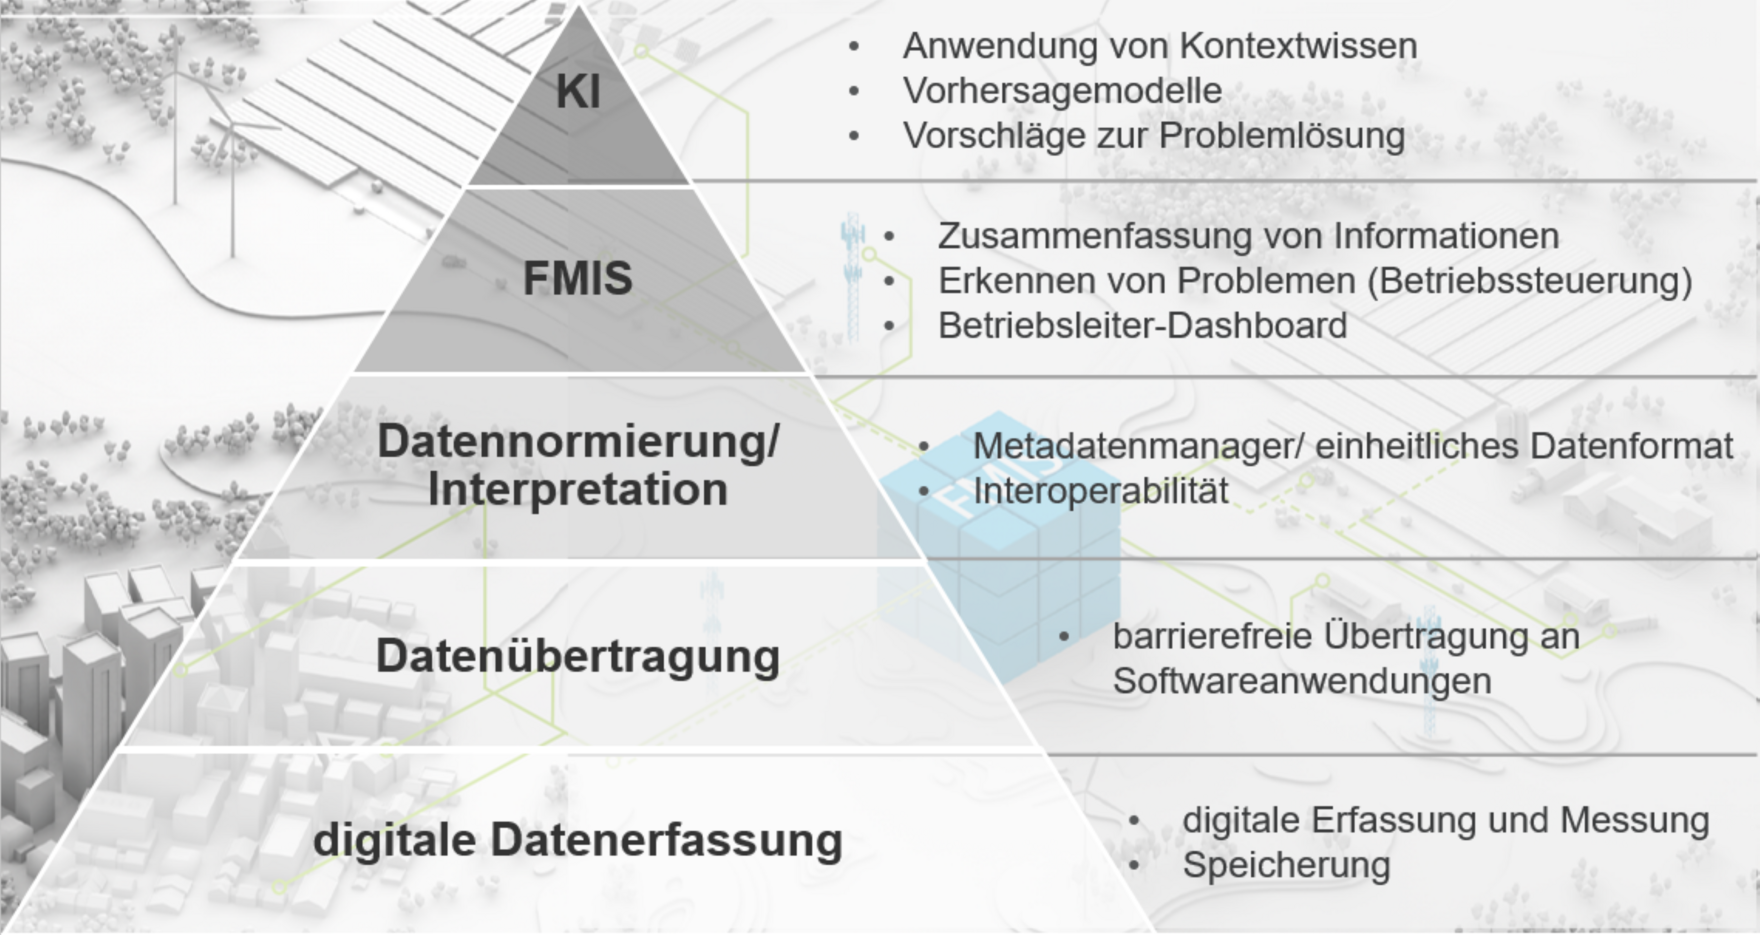 Pyramide von digitaler Datenerfassung über Datenübertragung, Datennormierung hin zu FMIS und weiter KI als Pyramidenspitze